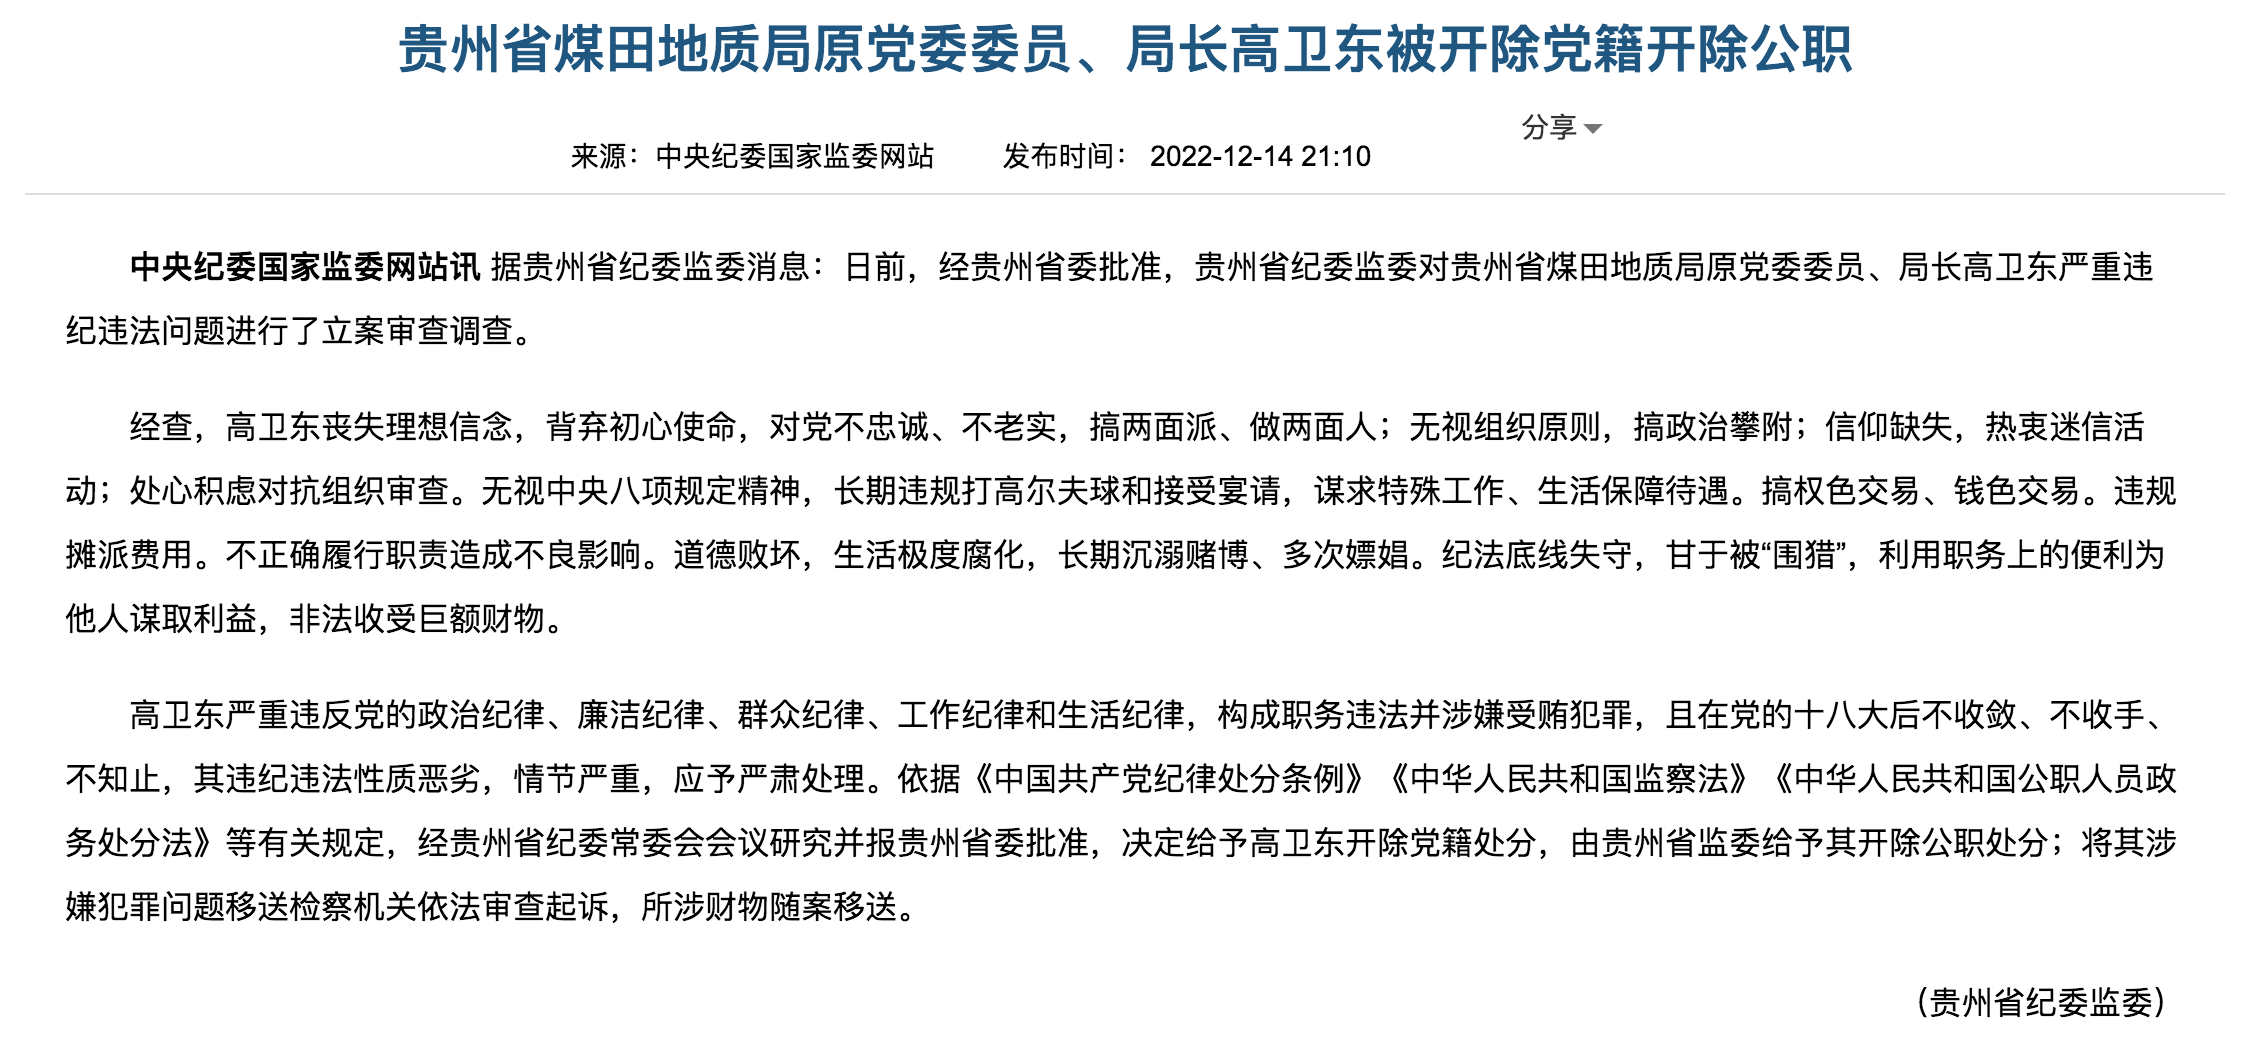 贵州省煤田地质局原党委委员、局长高卫东被开除党籍开除公职